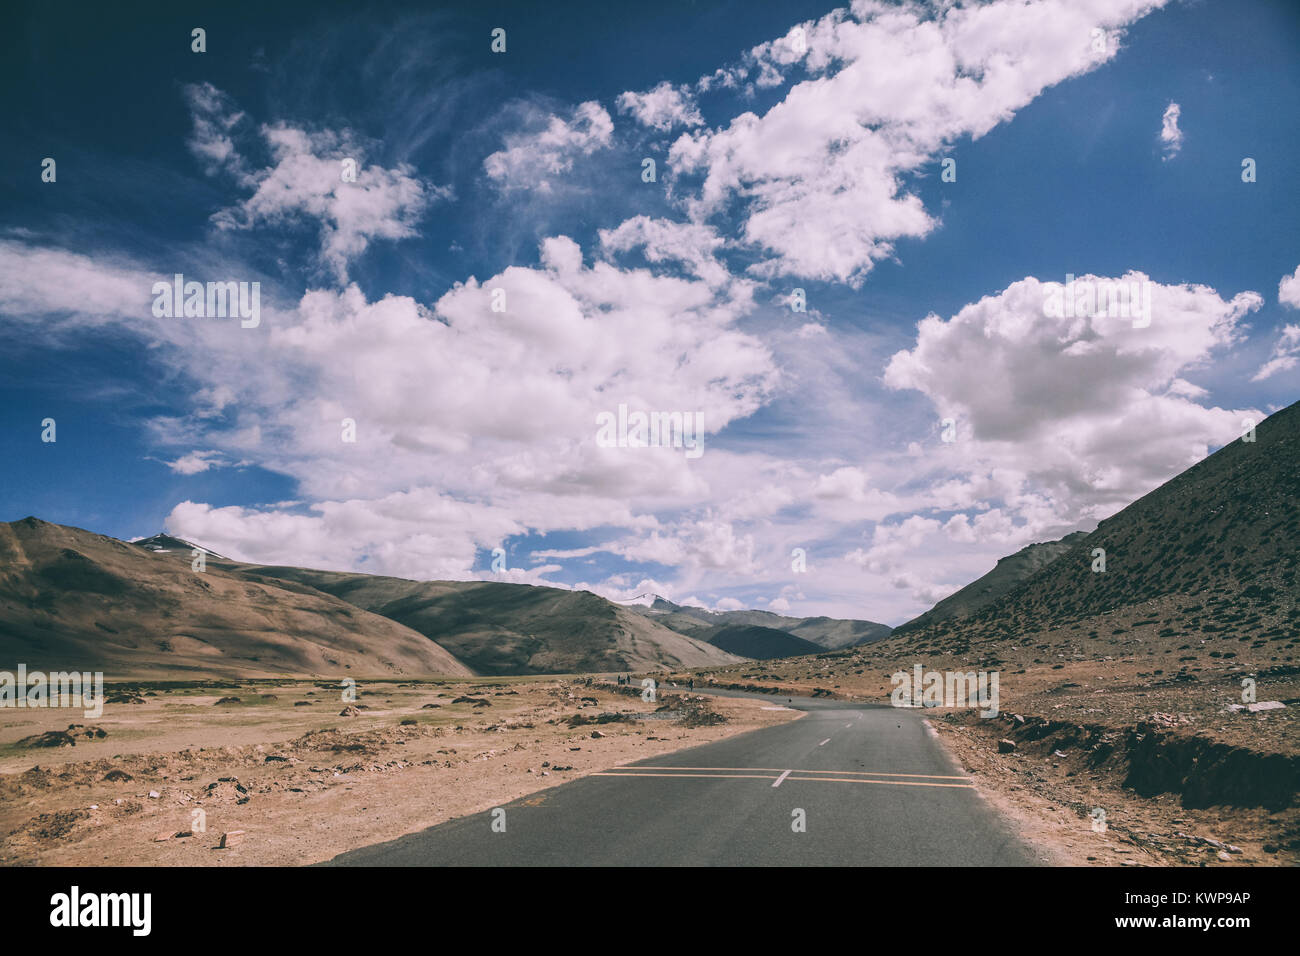 Asphalte vide route de montagne dans la région du Ladakh, Himalaya Indien Banque D'Images